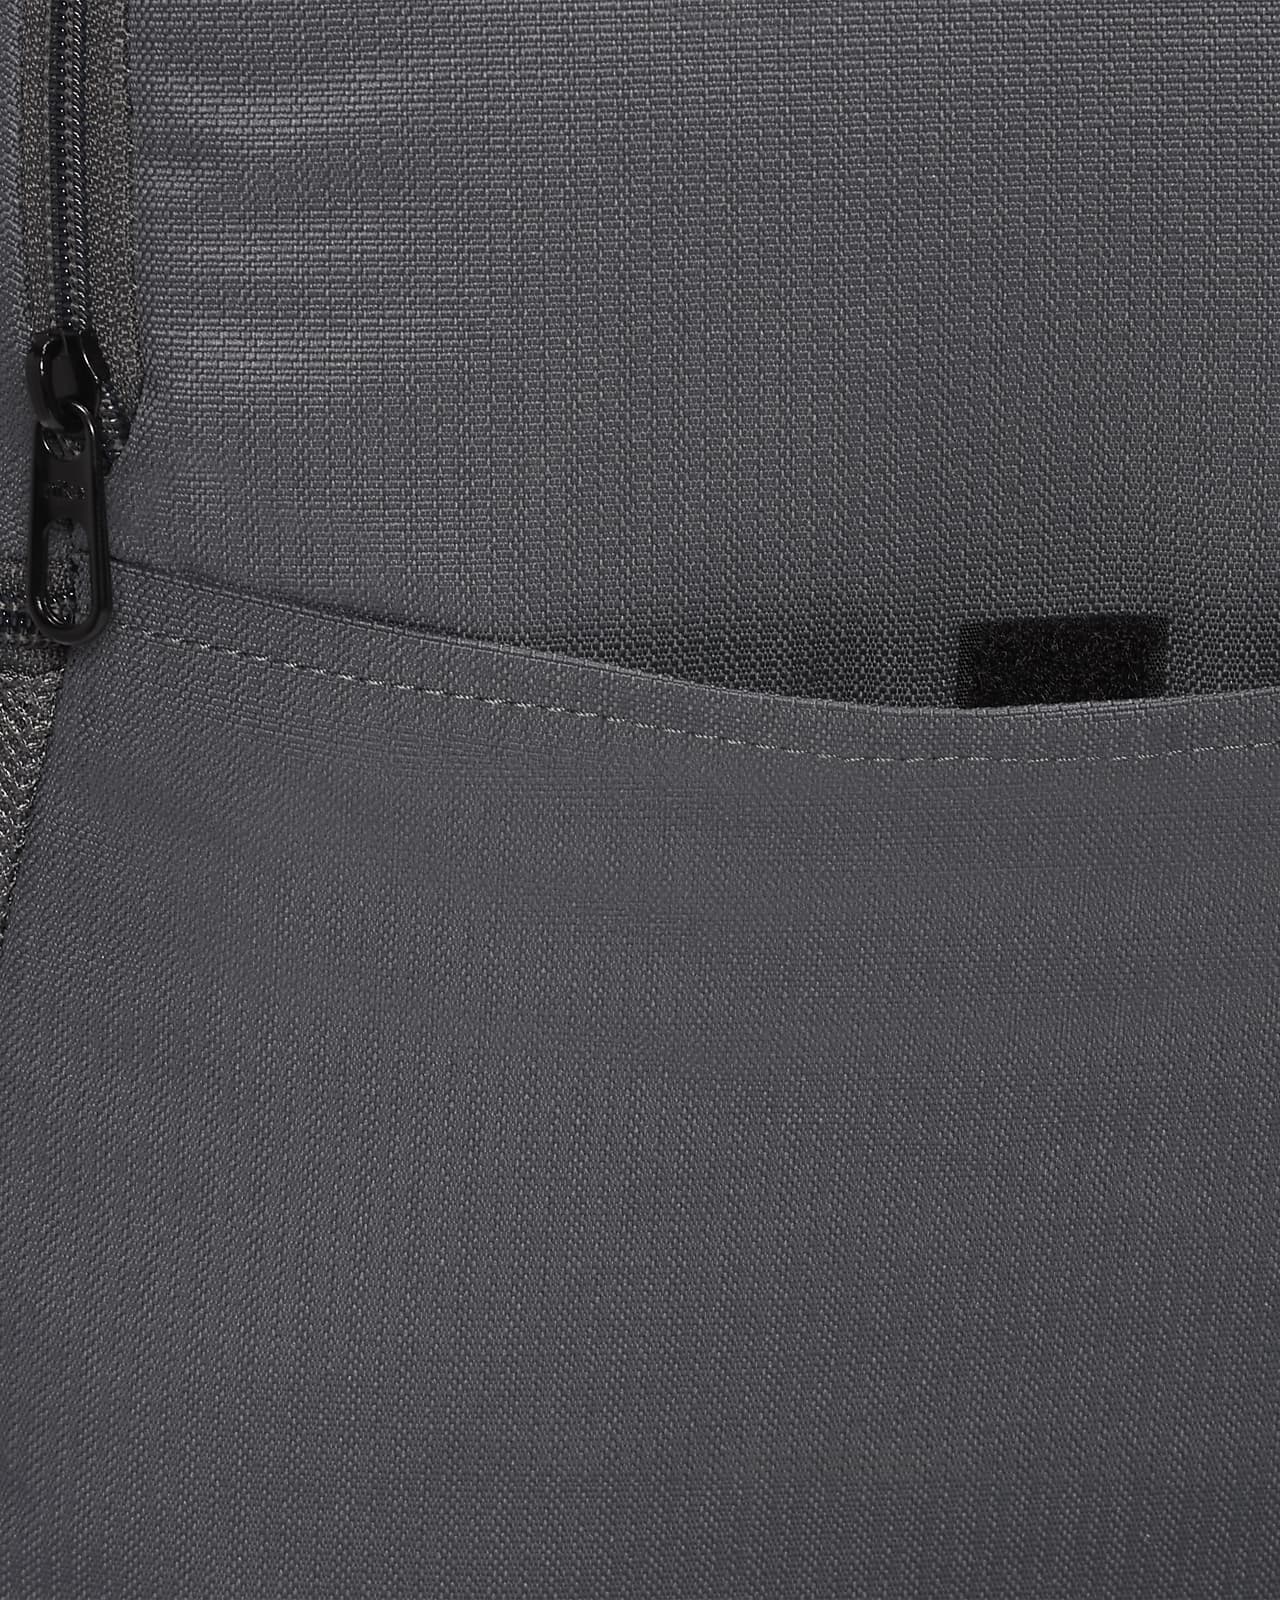 NIKE Brasilia 9.0 X-Large Backpack, BA5959 (Midnight Navy/Black